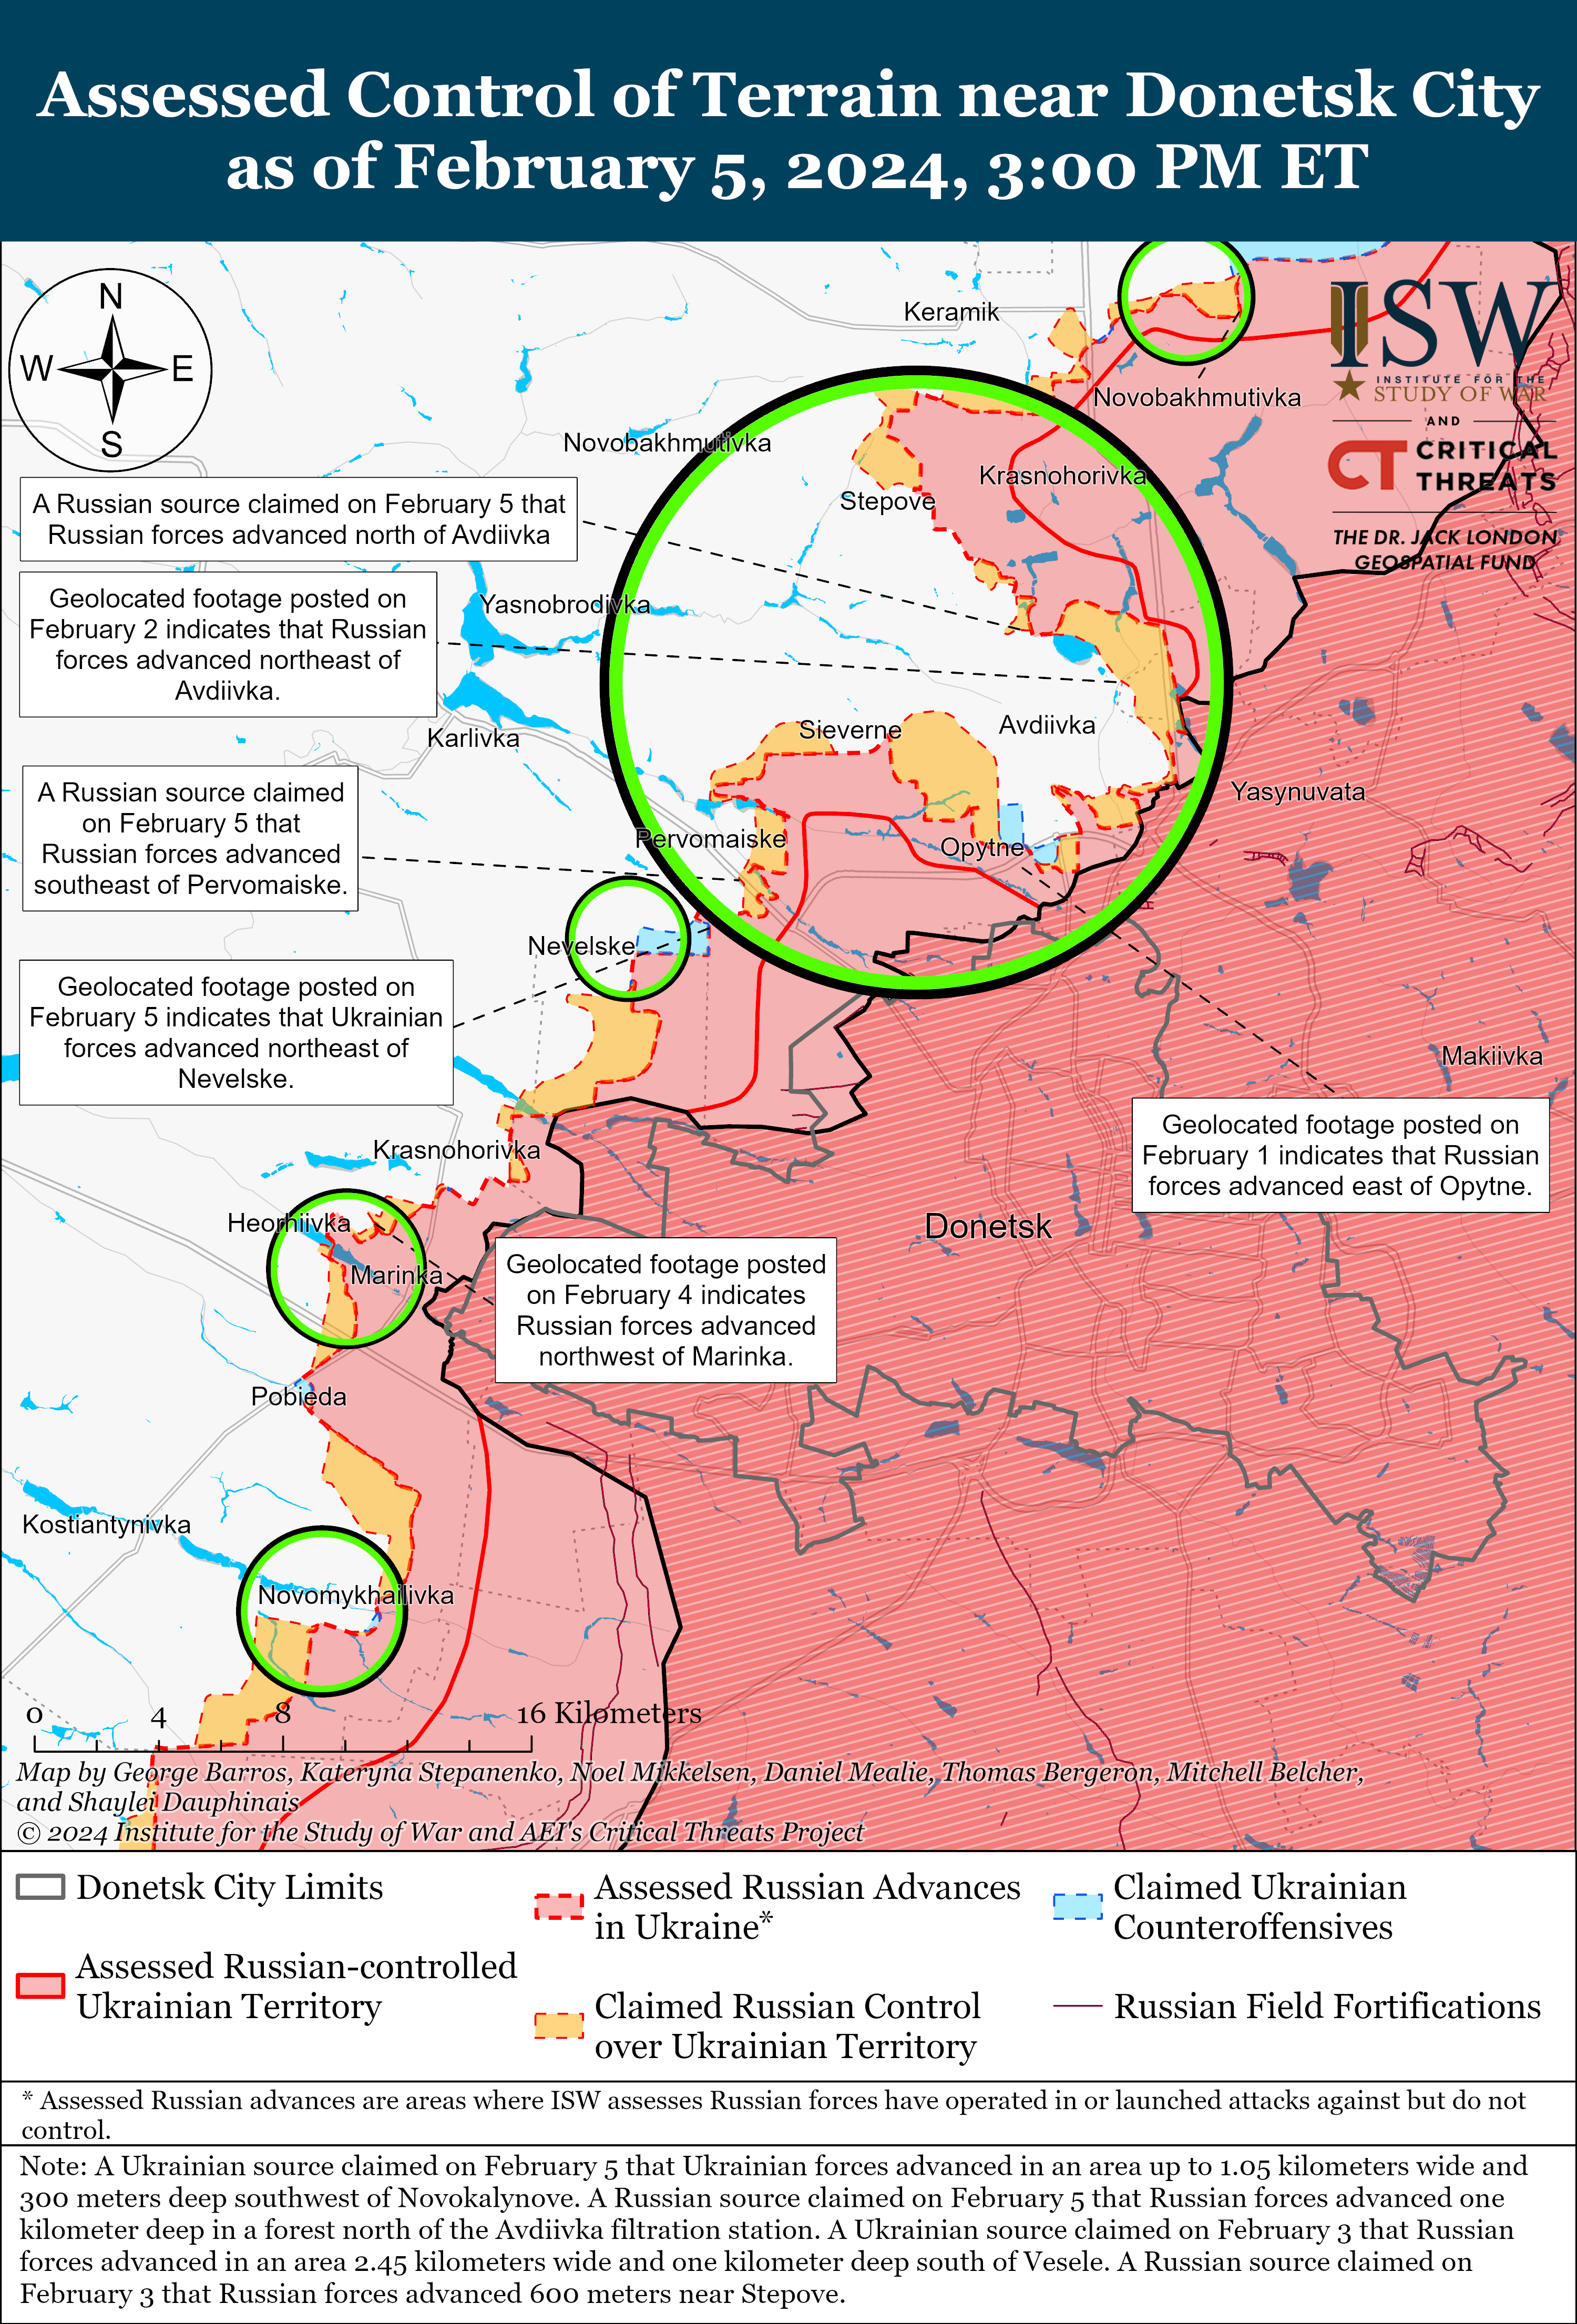 Украинские силы продвинулись к юго-западу от Авдеевки: карты ISW